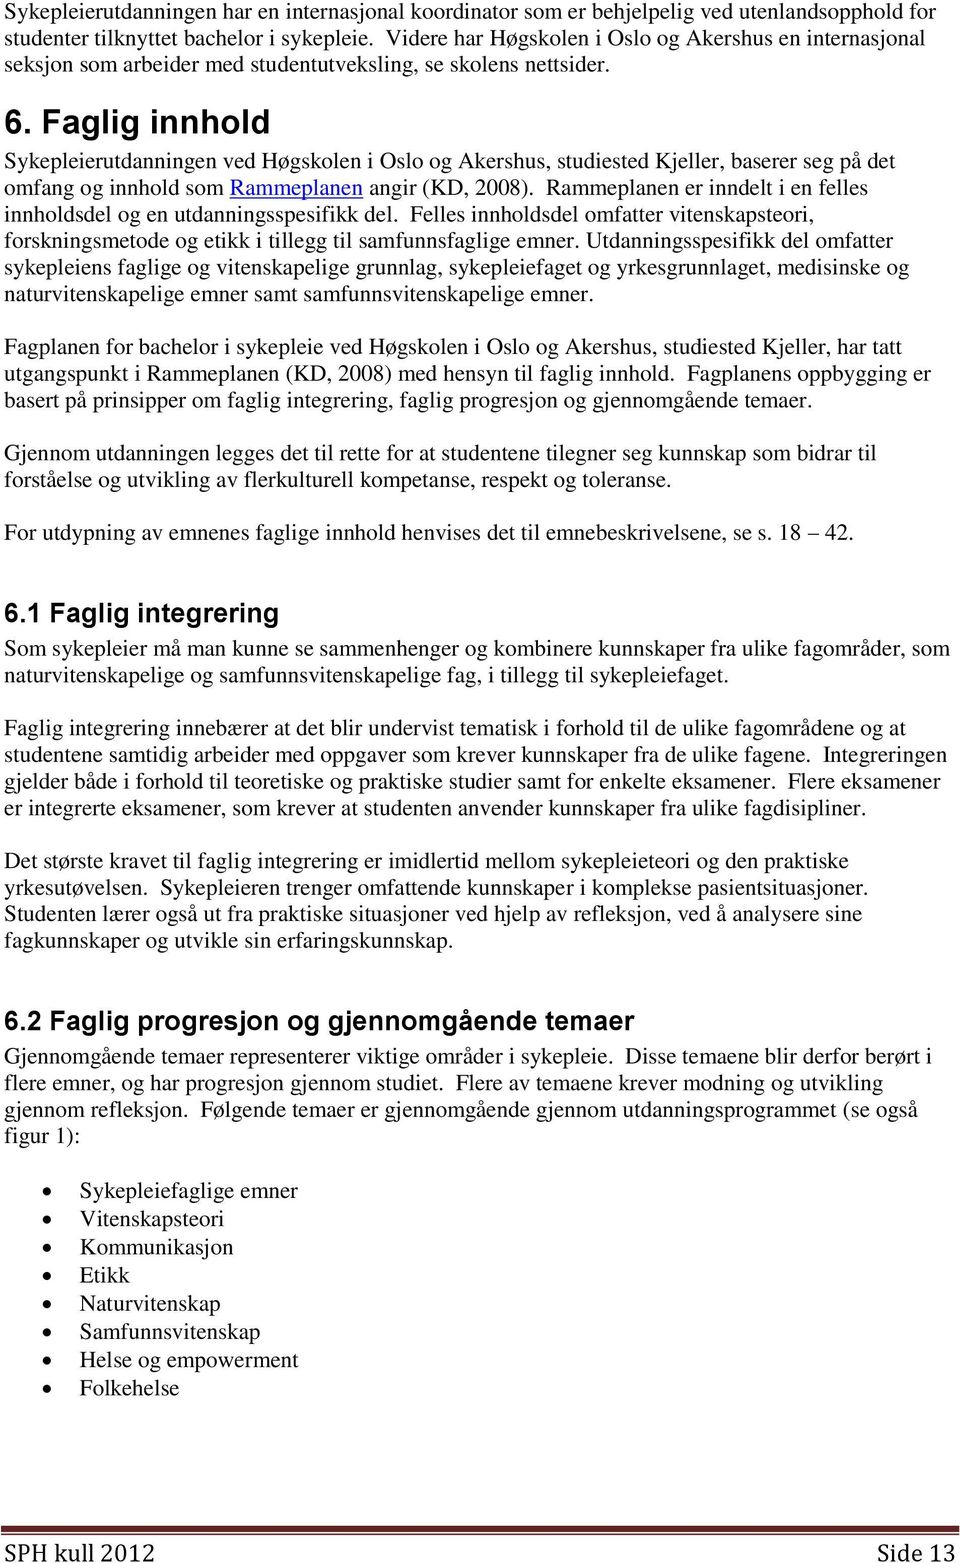 Faglig innhold Sykepleierutdanningen ved Høgskolen i Oslo og Akershus, studiested Kjeller, baserer seg på det omfang og innhold som Rammeplanen angir (KD, 2008).